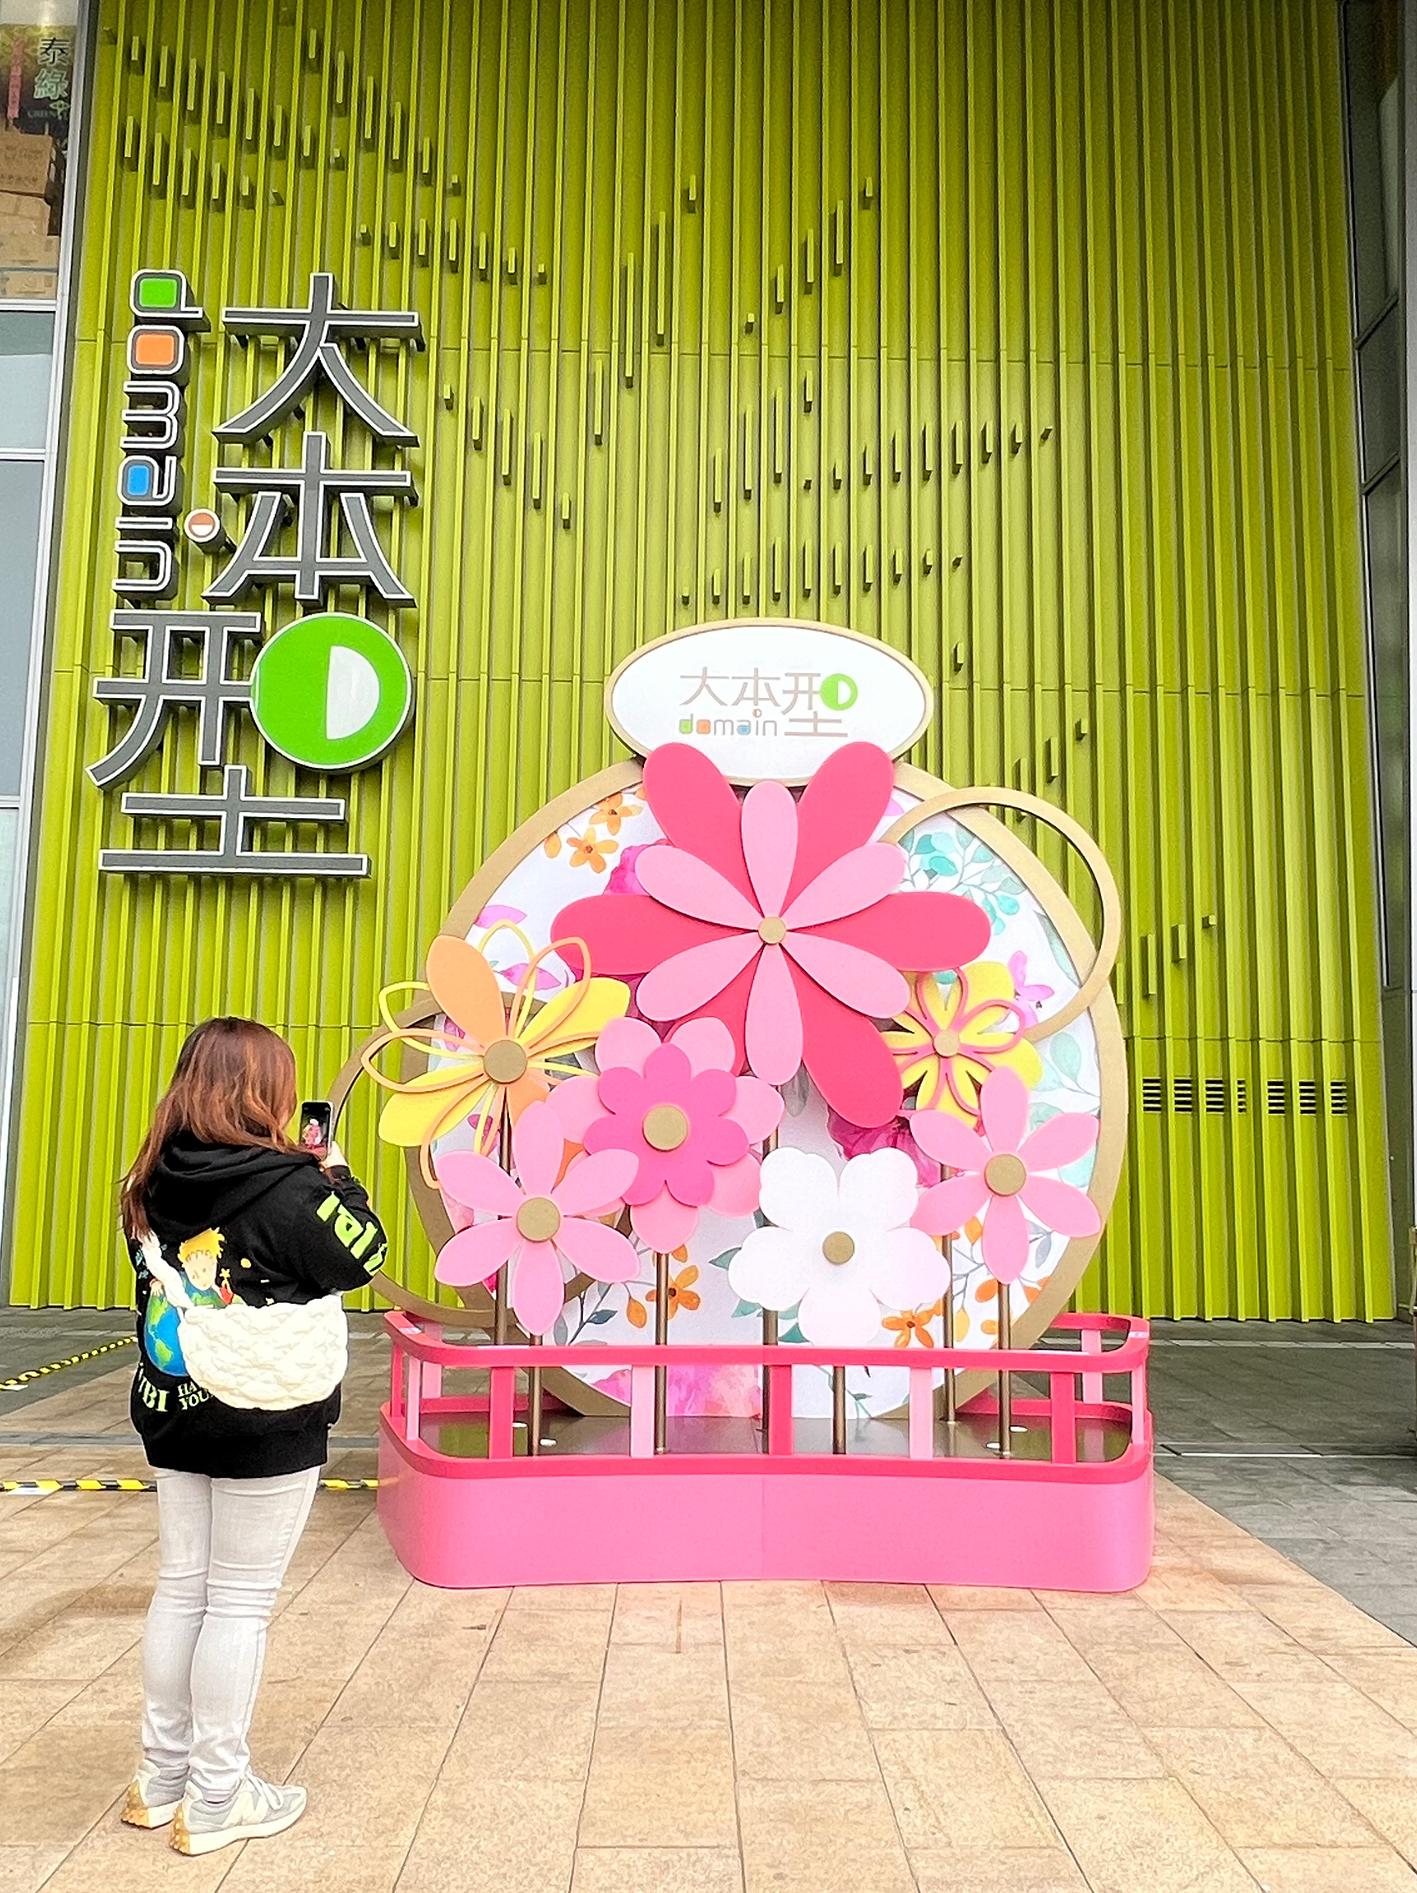 为庆祝农历新年将至，香港房屋委员会在辖下商场举办新春庆祝活动，与市民共度新岁及推动经济。图示油塘区域商场「大本型」露天广场设置的「繁花运转多吉祥」贺年装饰。